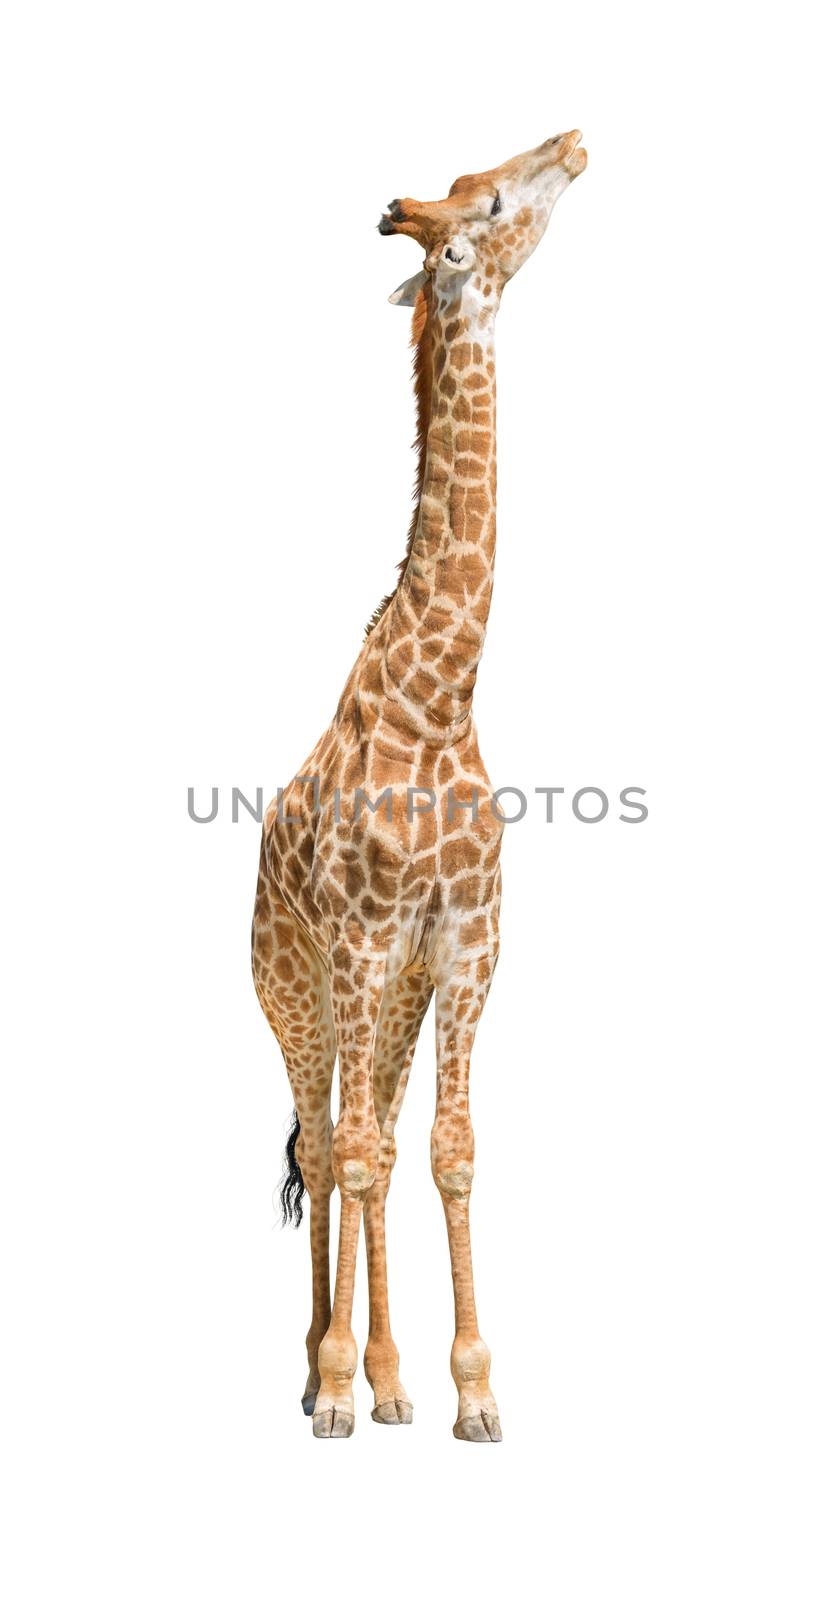 African giraffe raising head up cutout by vkstudio